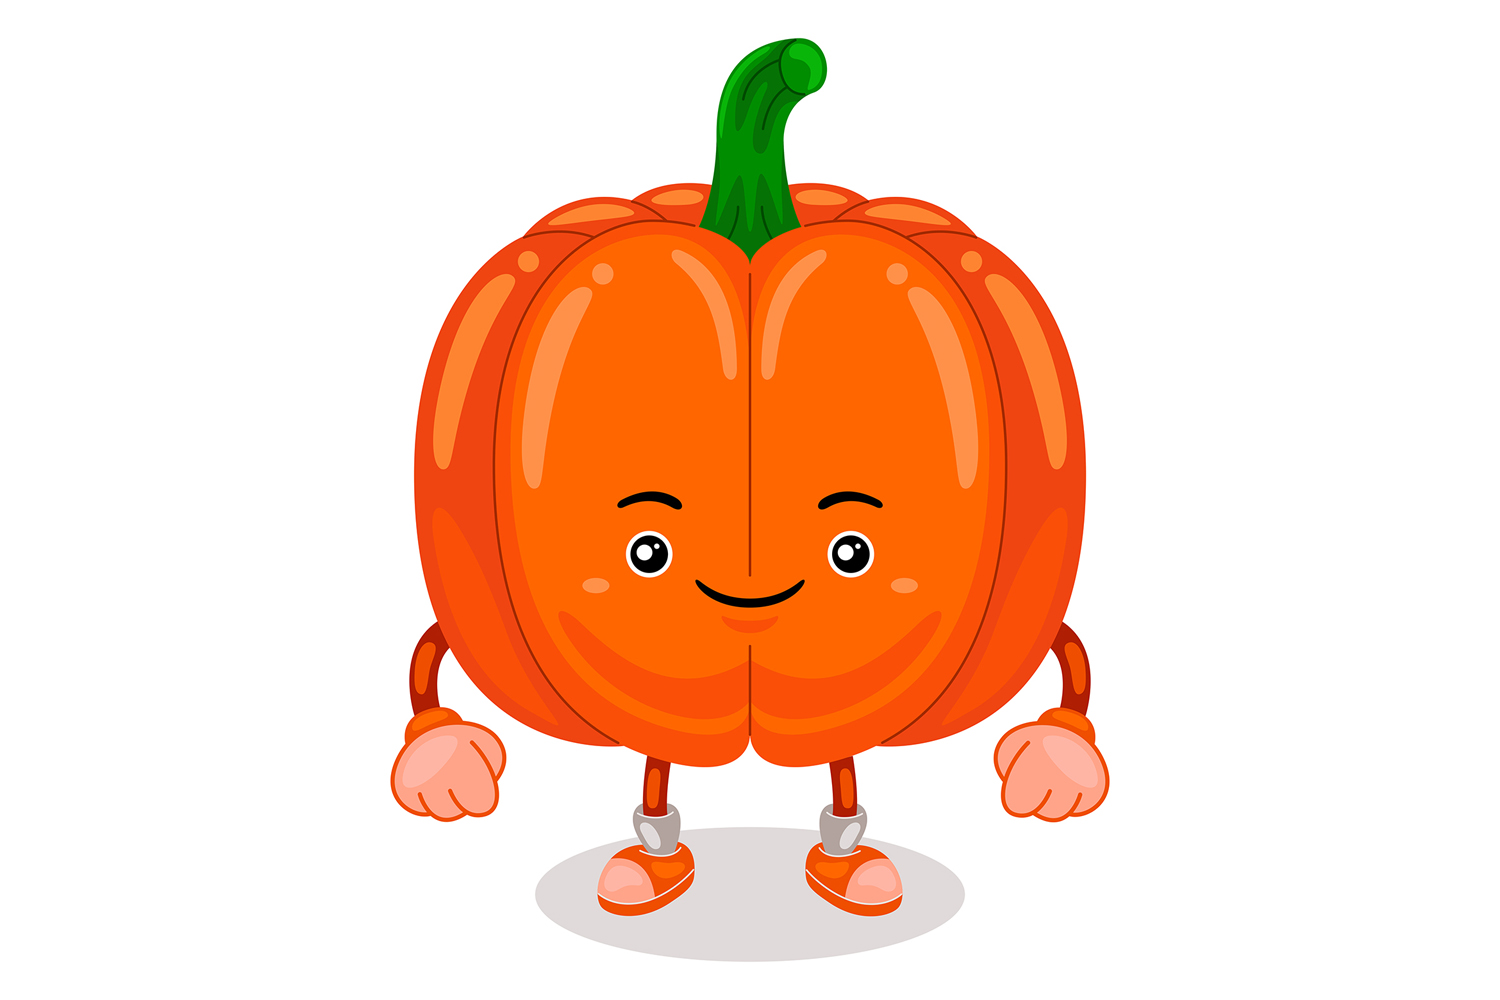 Pumpkin Mascot Character Vector Illustration